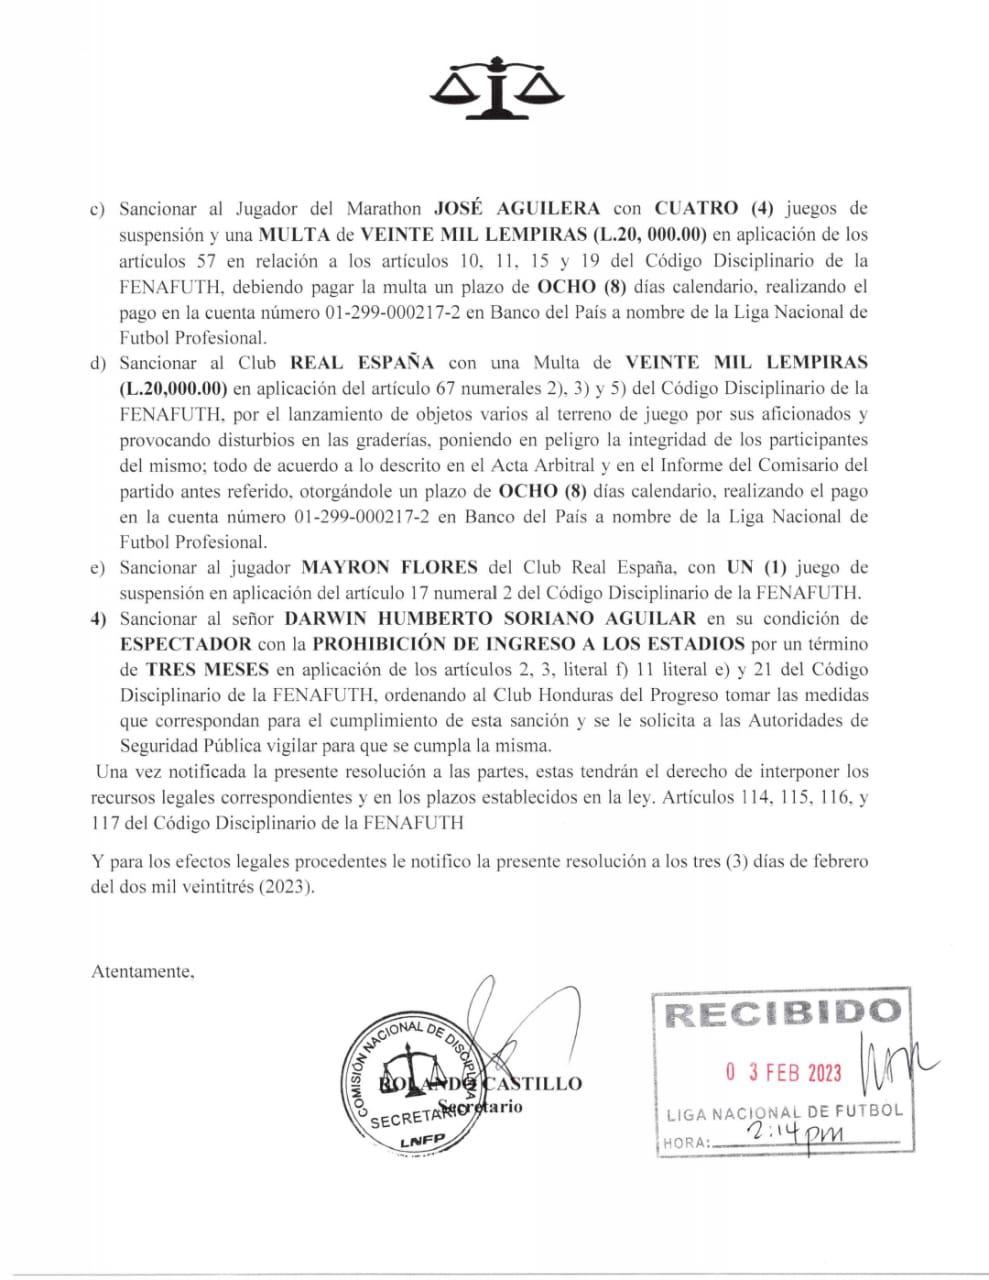 Real España también ha multado por los disturbios que provocaron los miembros de su barra.